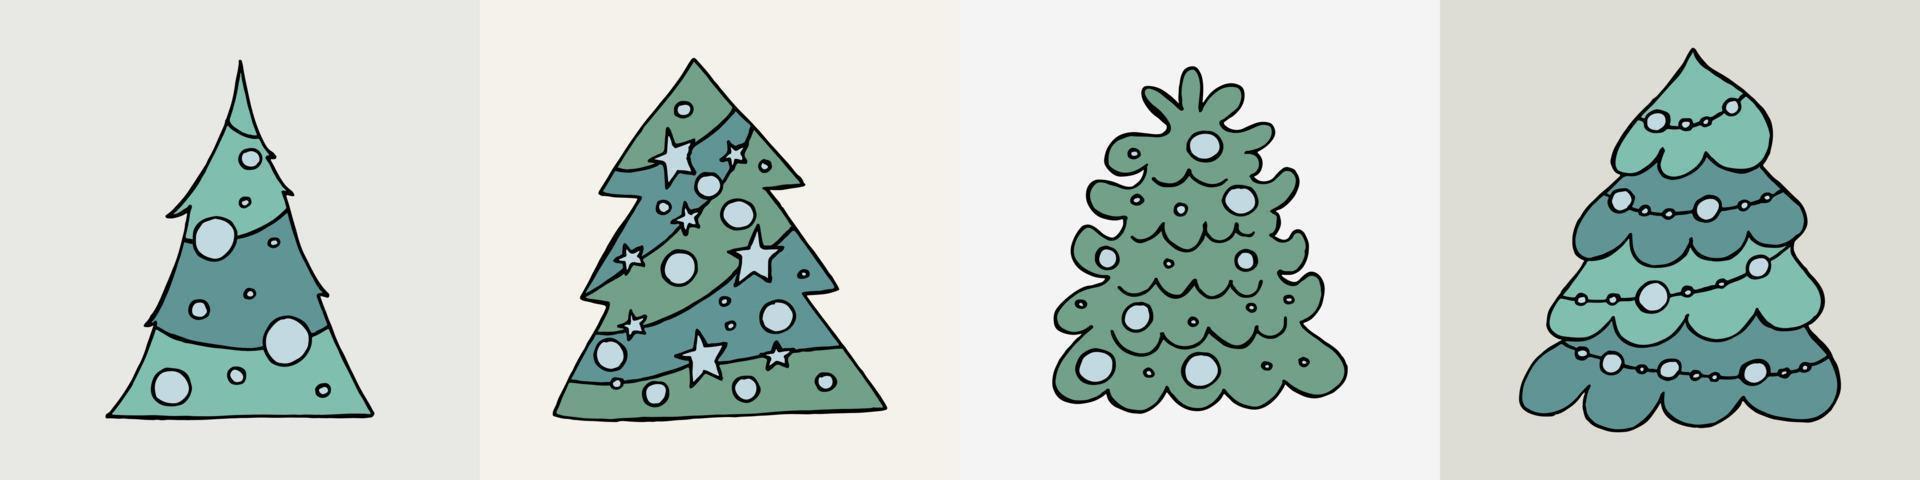 ein handgezeichneter Weihnachtsbaum. Vektorillustration im Doodle-Stil. Winterstimmung. hallo 2023. frohe weihnachten und ein gutes neues jahr. Grüne Bäume mit blauem Spielzeug auf grauem Hintergrund. vektor